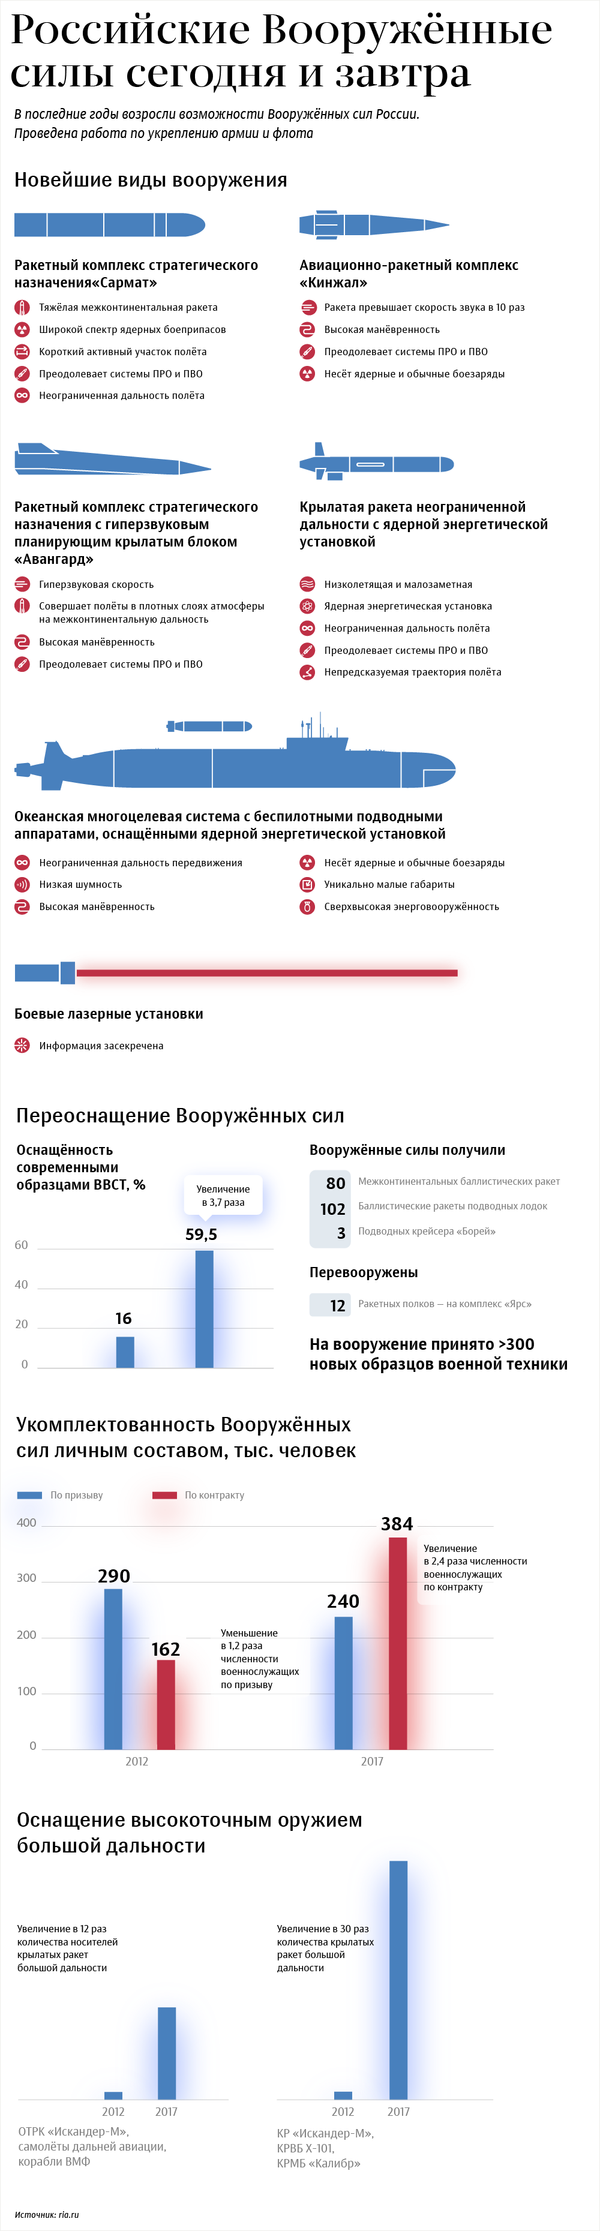 Российские вооруженные силы сегодня и завтра – инфографика на sputnik.by - Sputnik Беларусь